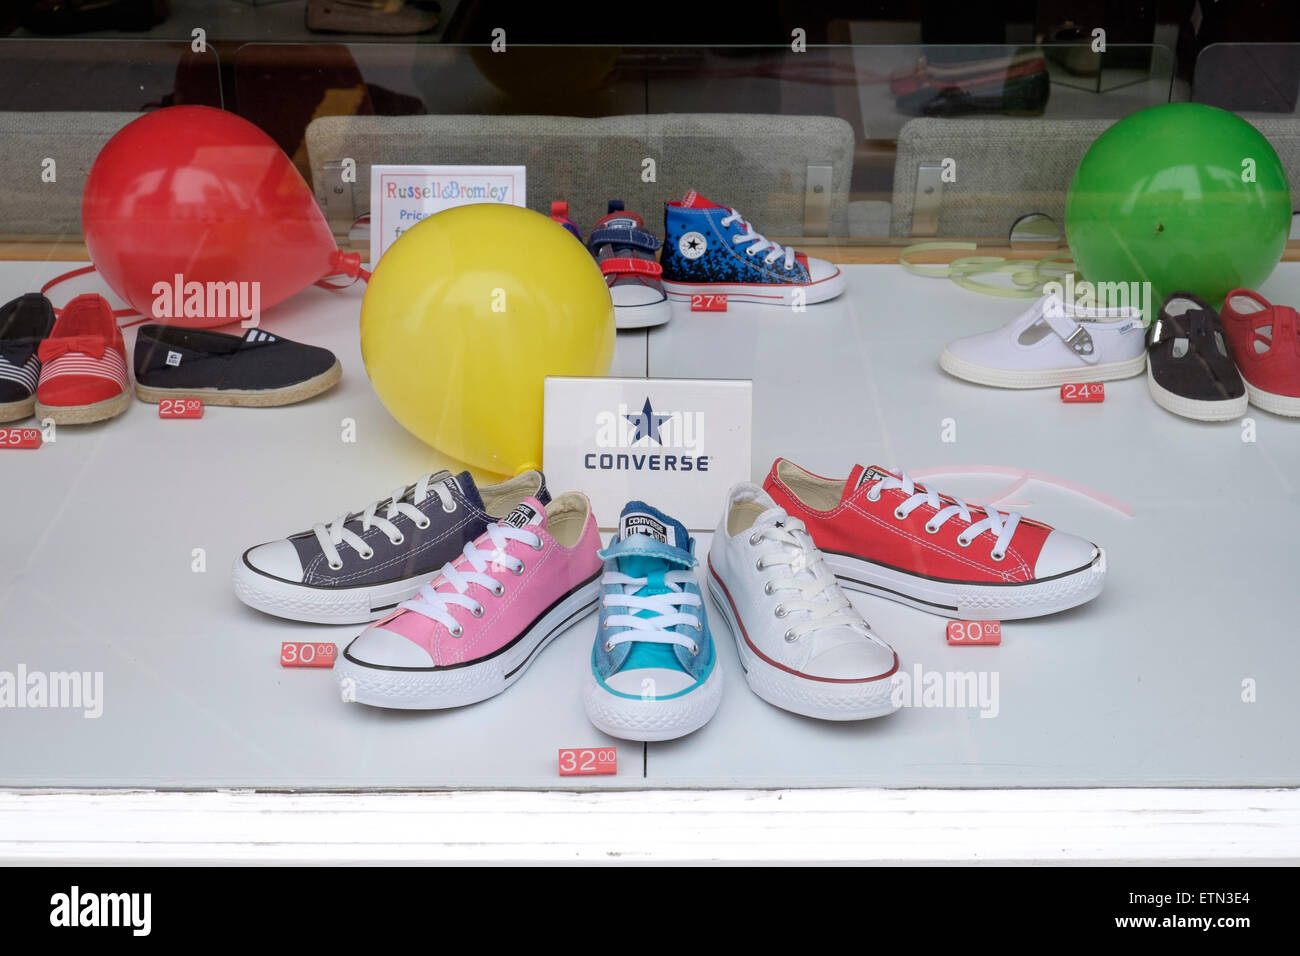 Bambini scarpe Converse visualizzati in un negozio di scarpe finestra Foto Stock